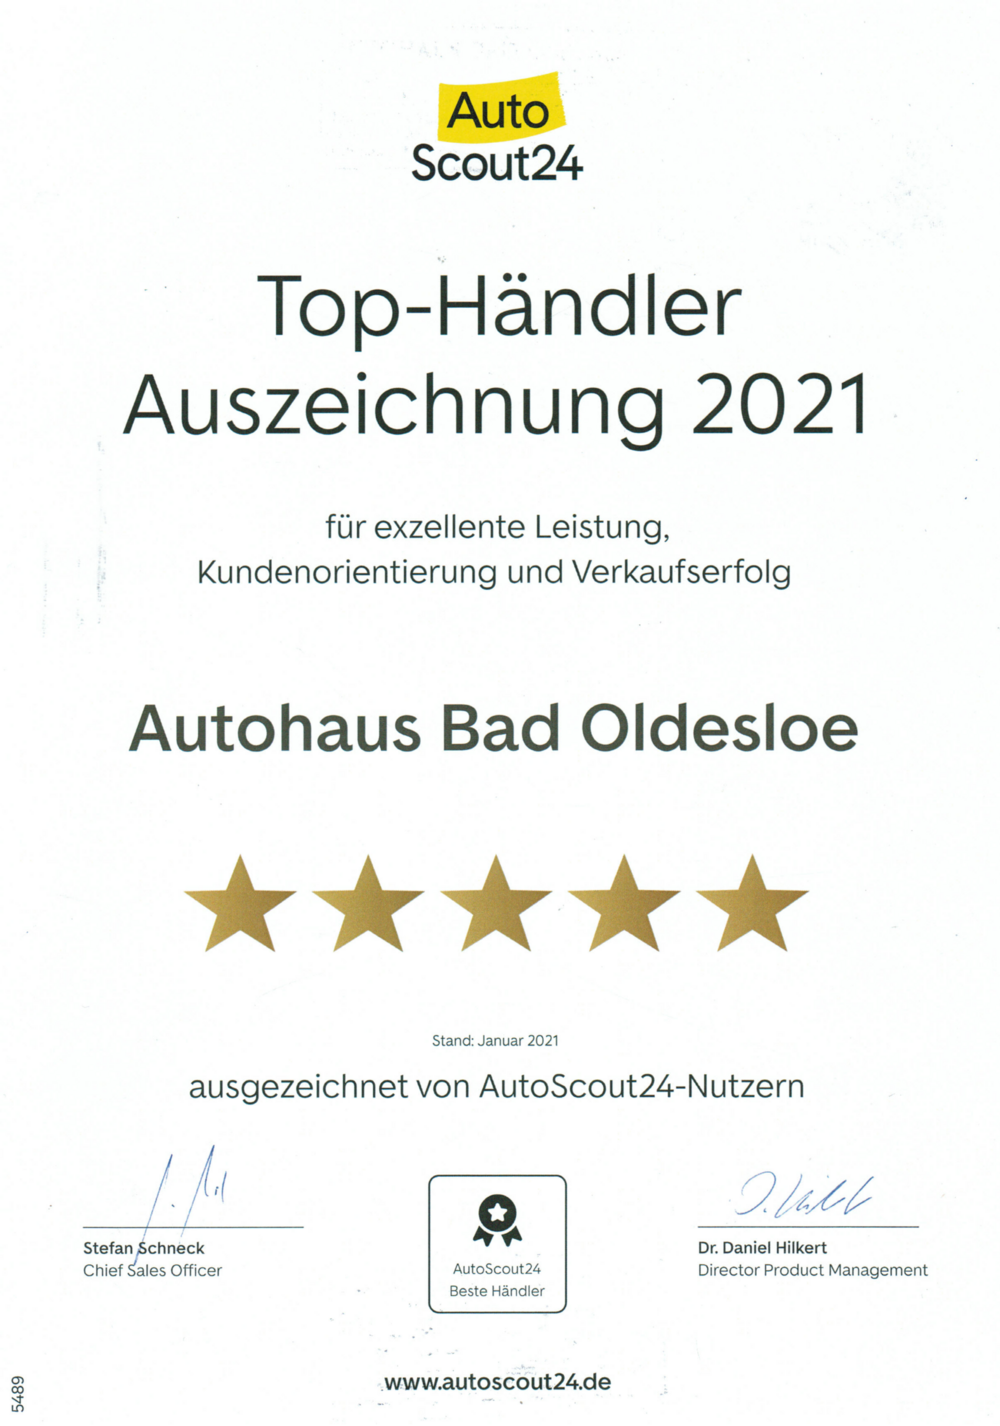 Bild vergrößern: Top-Händler Auszeichnung 2021 für Autohaus Bad Oldesloe von Autoscout24